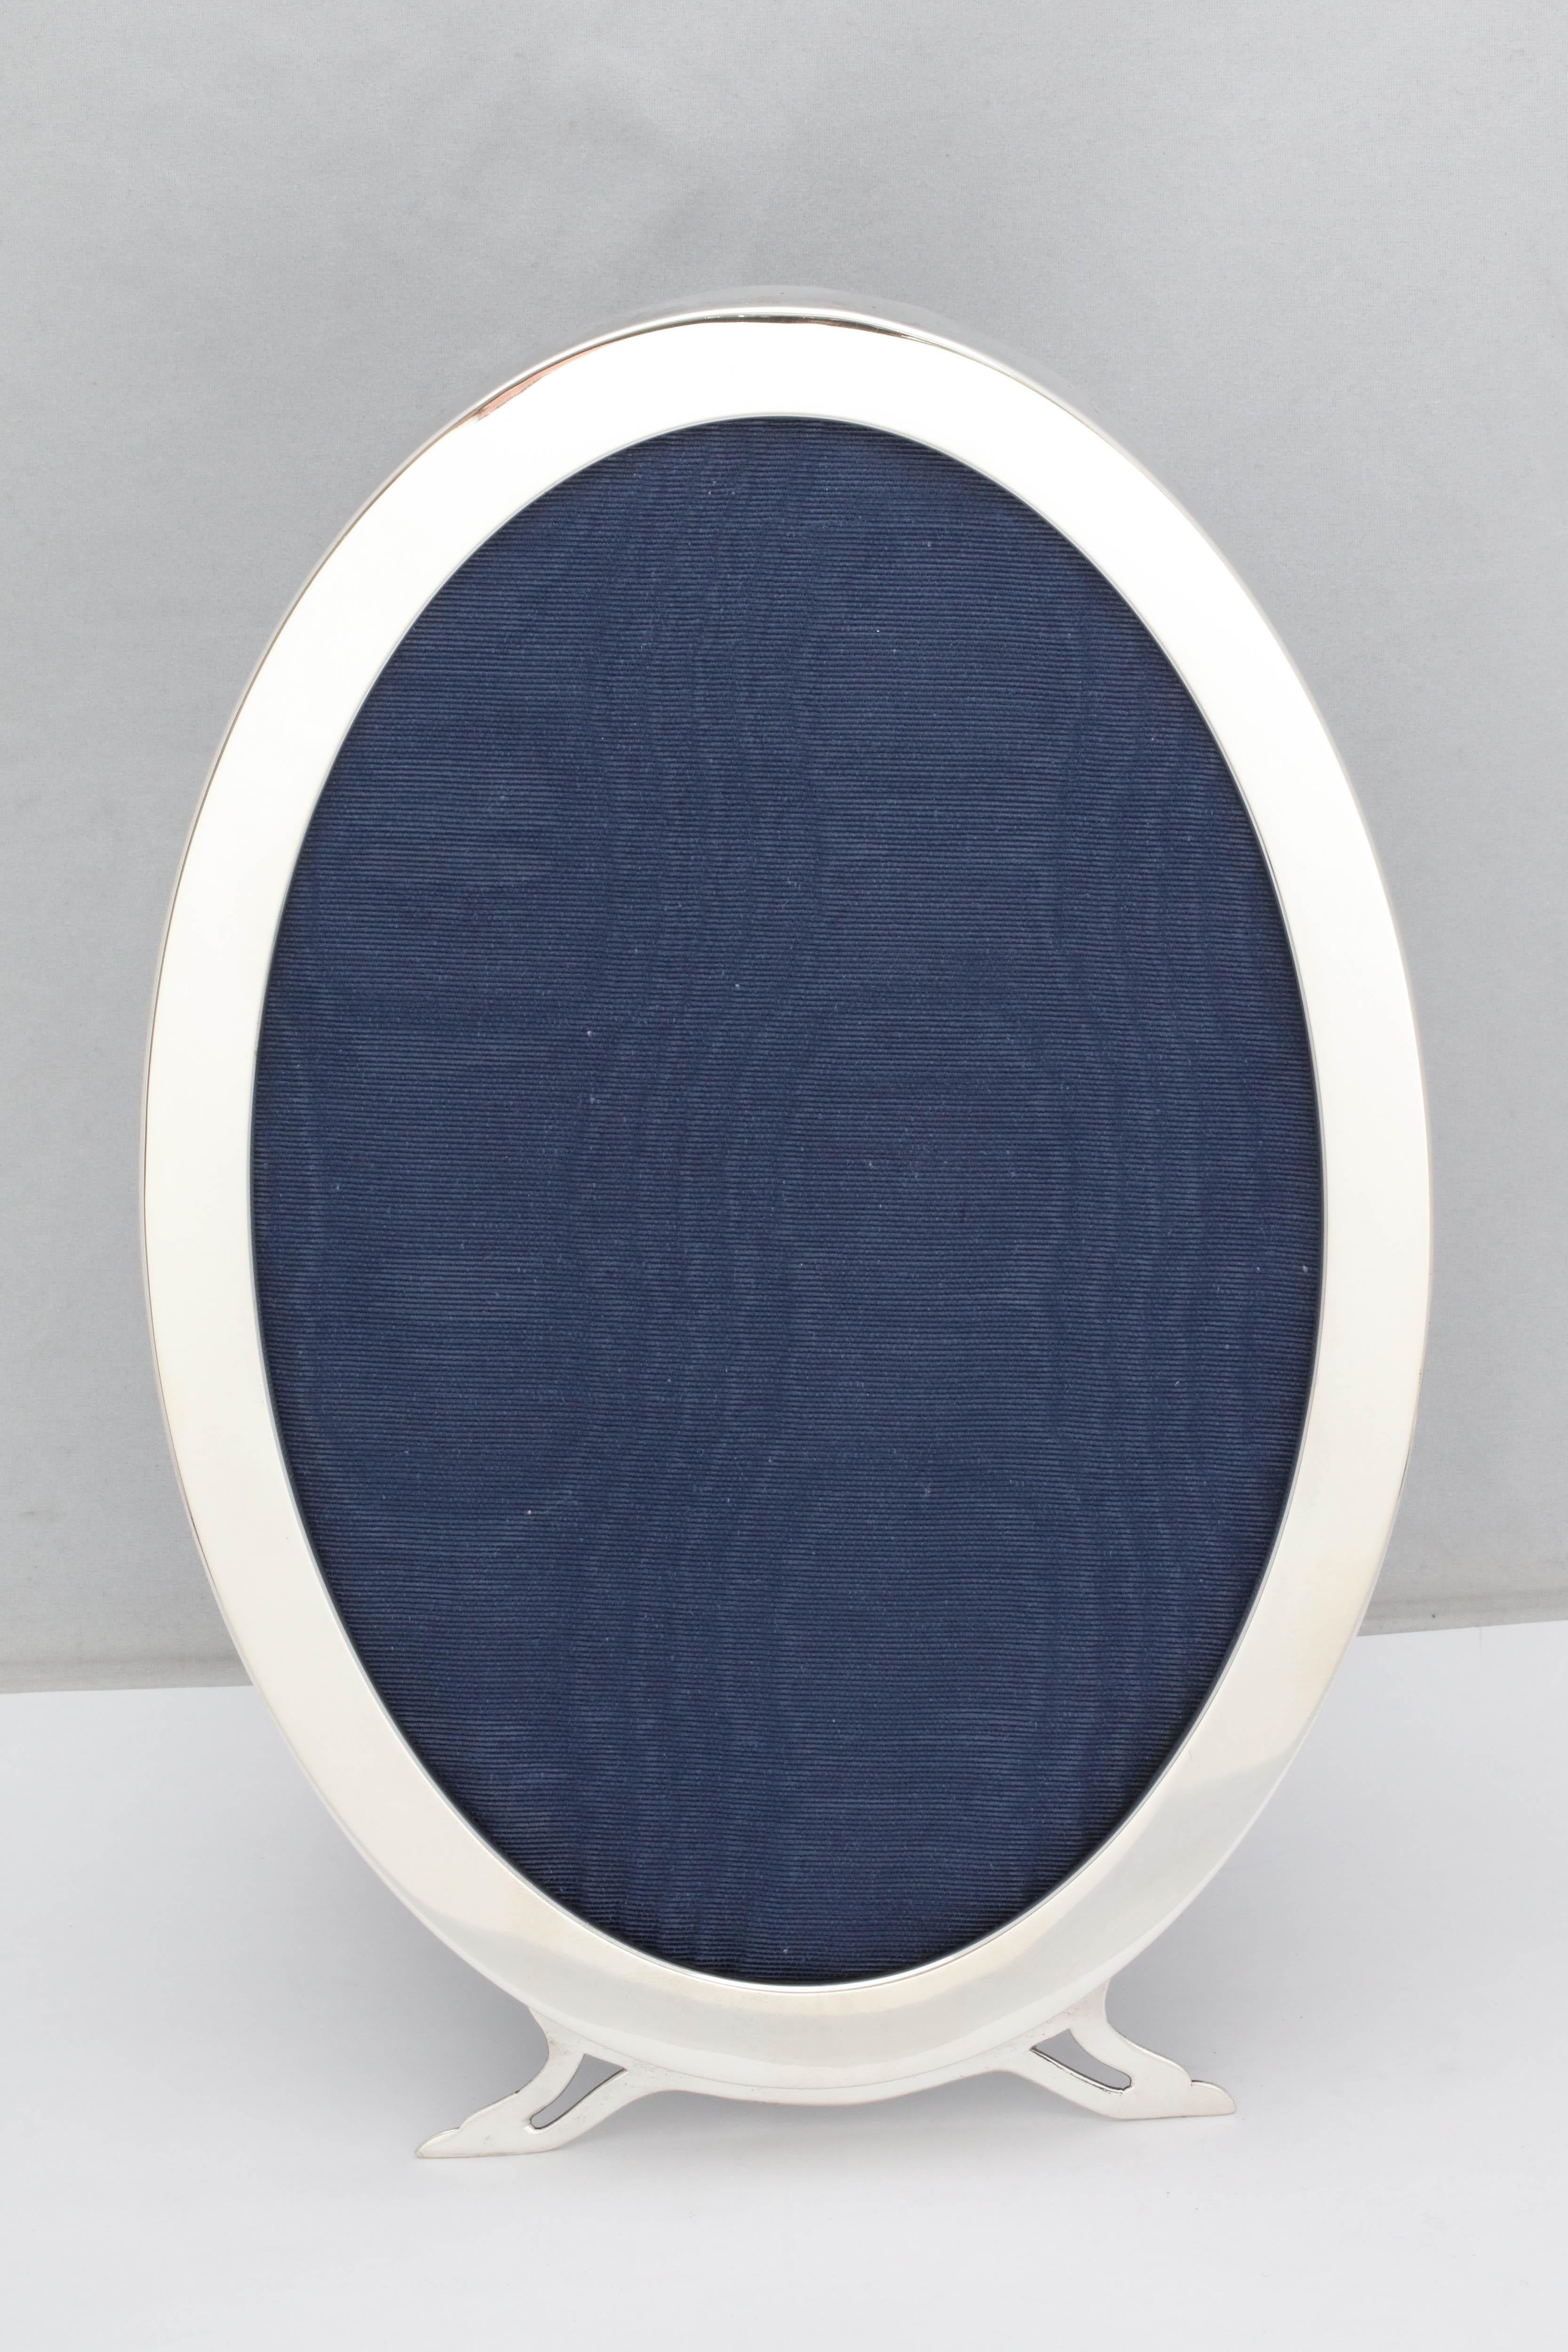 Grand, période Art Nouveau,  cadre ovale à pied en argent sterling avec dos en velours bleu, Londres, année 1907, Sebastian Henry Garrard - fabricant. Des pieds gracieux. Mesure 11 1/4 pouces de haut x 7 1/4 pouces de large x 5 3/4 pouces de